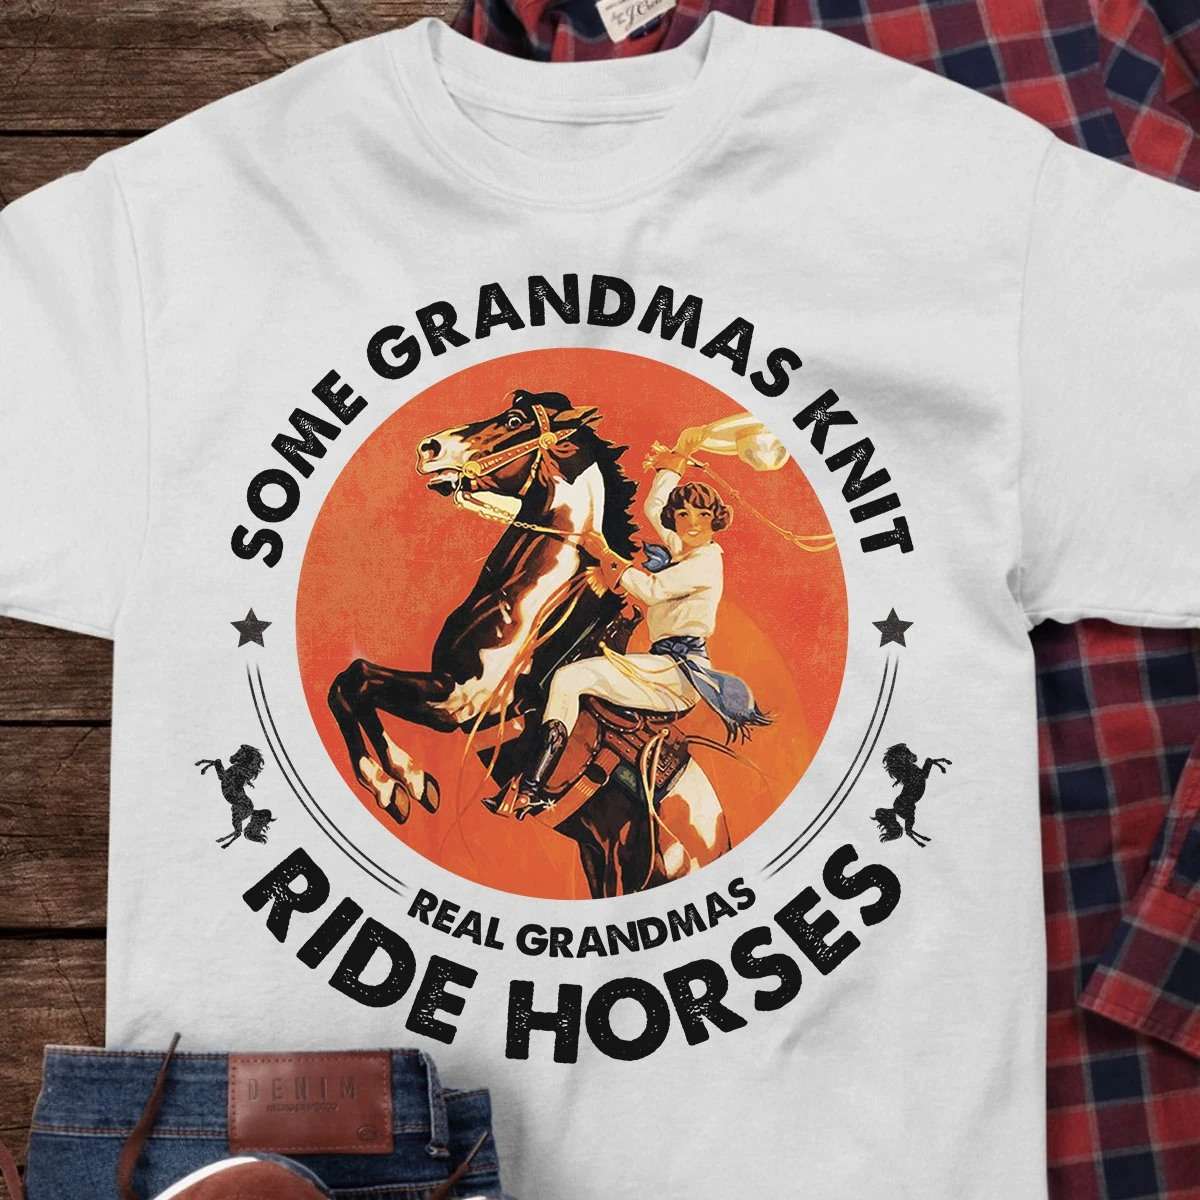 Some grandmas knit, real grandmas ride horses - Grandma cowgirls